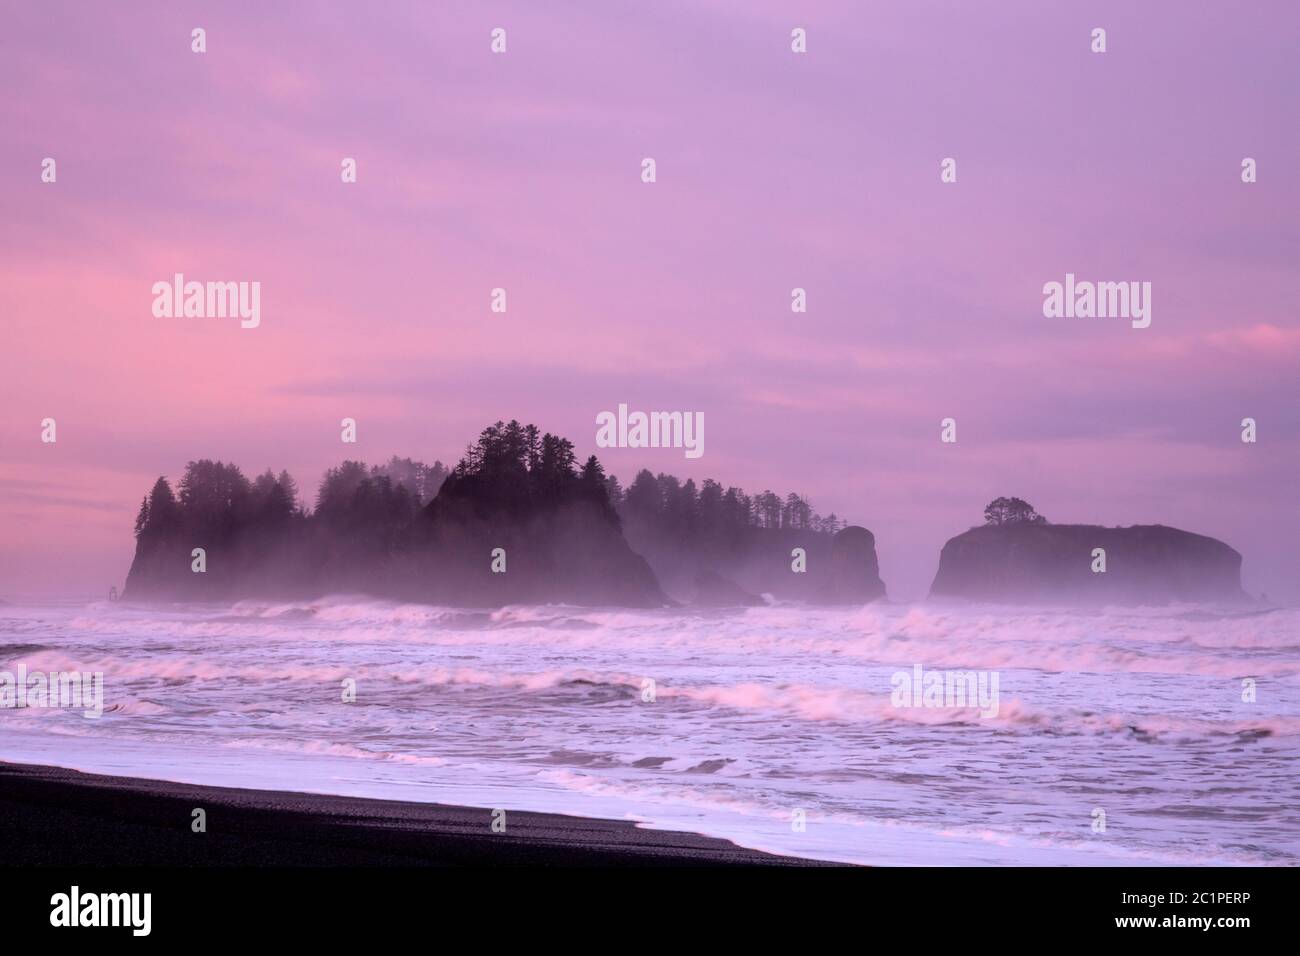 WA16841-00...WASHINGTON - brume autour de l'île James au lever du soleil lors d'une journée de tempête à la plage du Rialto dans le parc national olympique. Banque D'Images